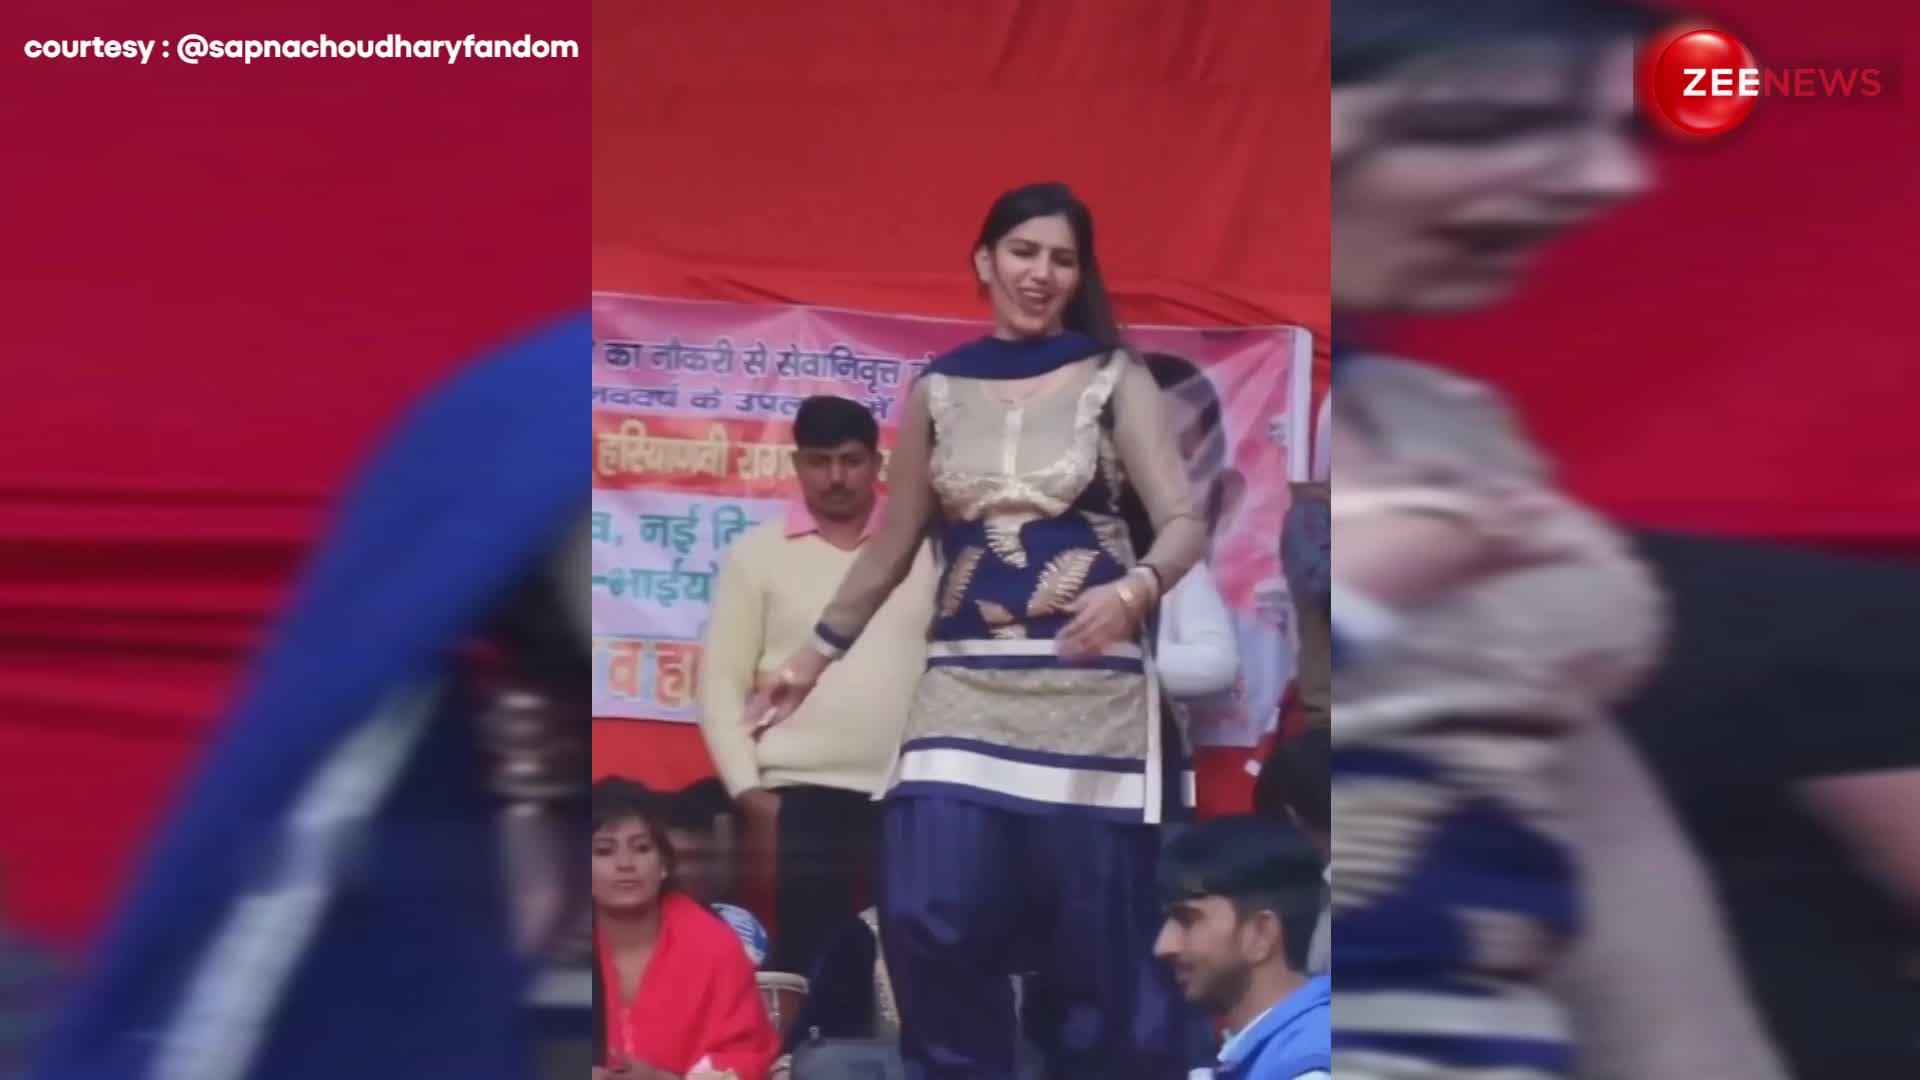 Sapna Chaudhary ने स्टेज पर जलेबी की तरह घुमाई कमर, कातिलाना मूव्स देख छूटे लोगों के पसीने